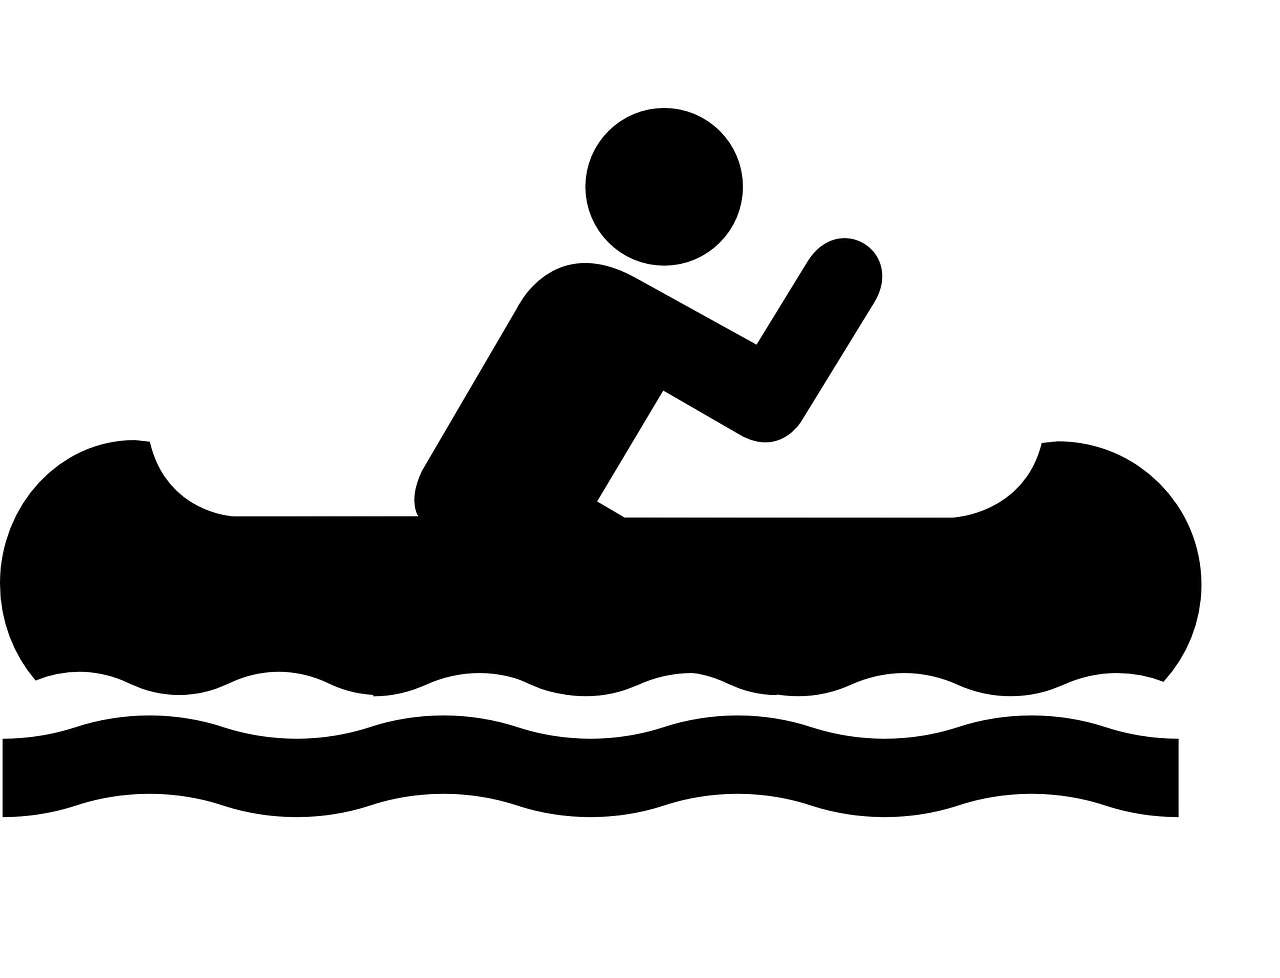 canoe sign symbol free photo